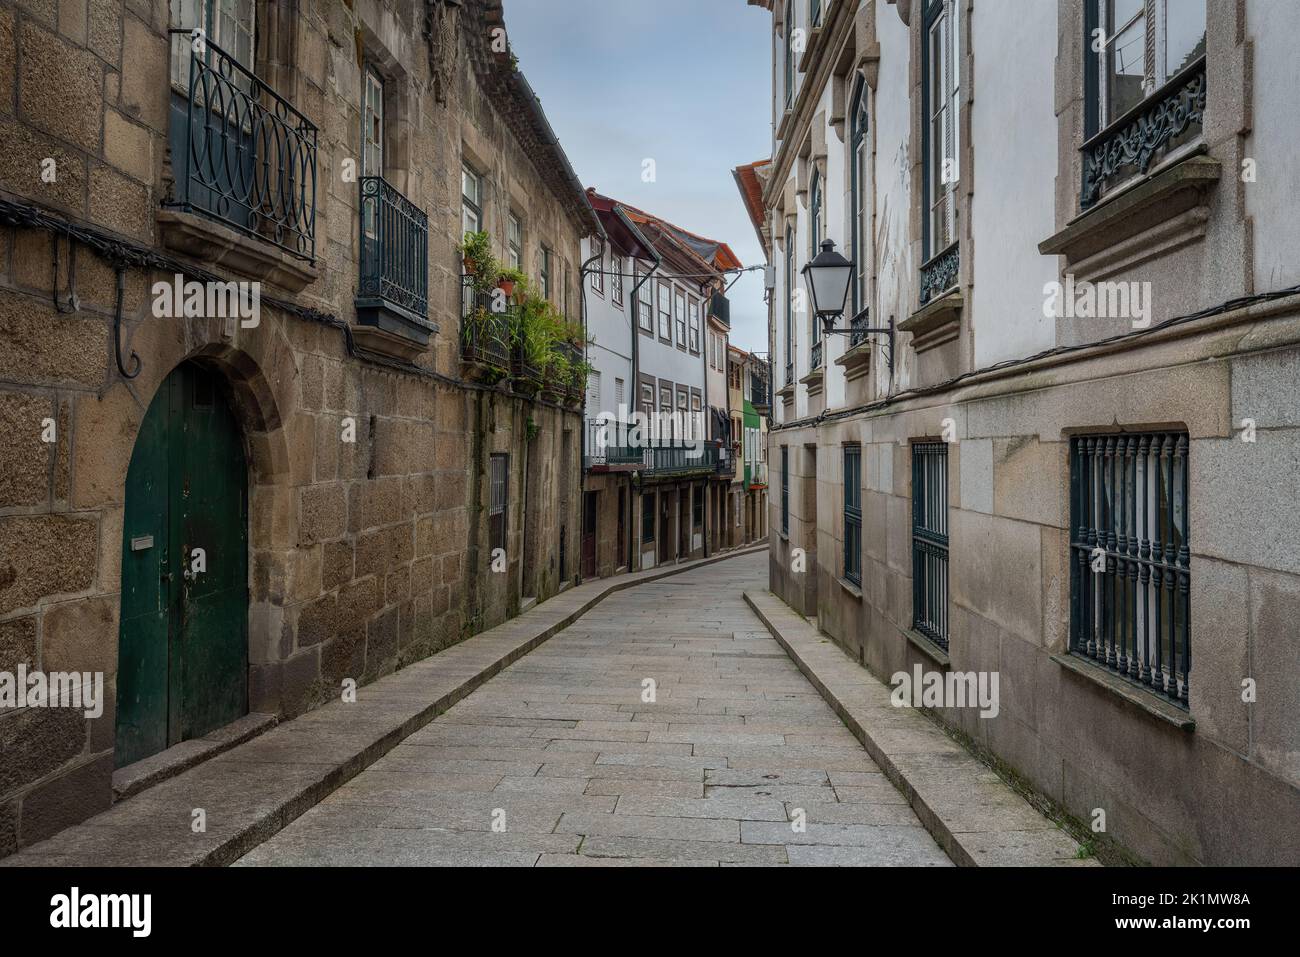 Calle medieval Santa Maria - calle más antigua de la ciudad - Guimaraes, Portugal Foto de stock